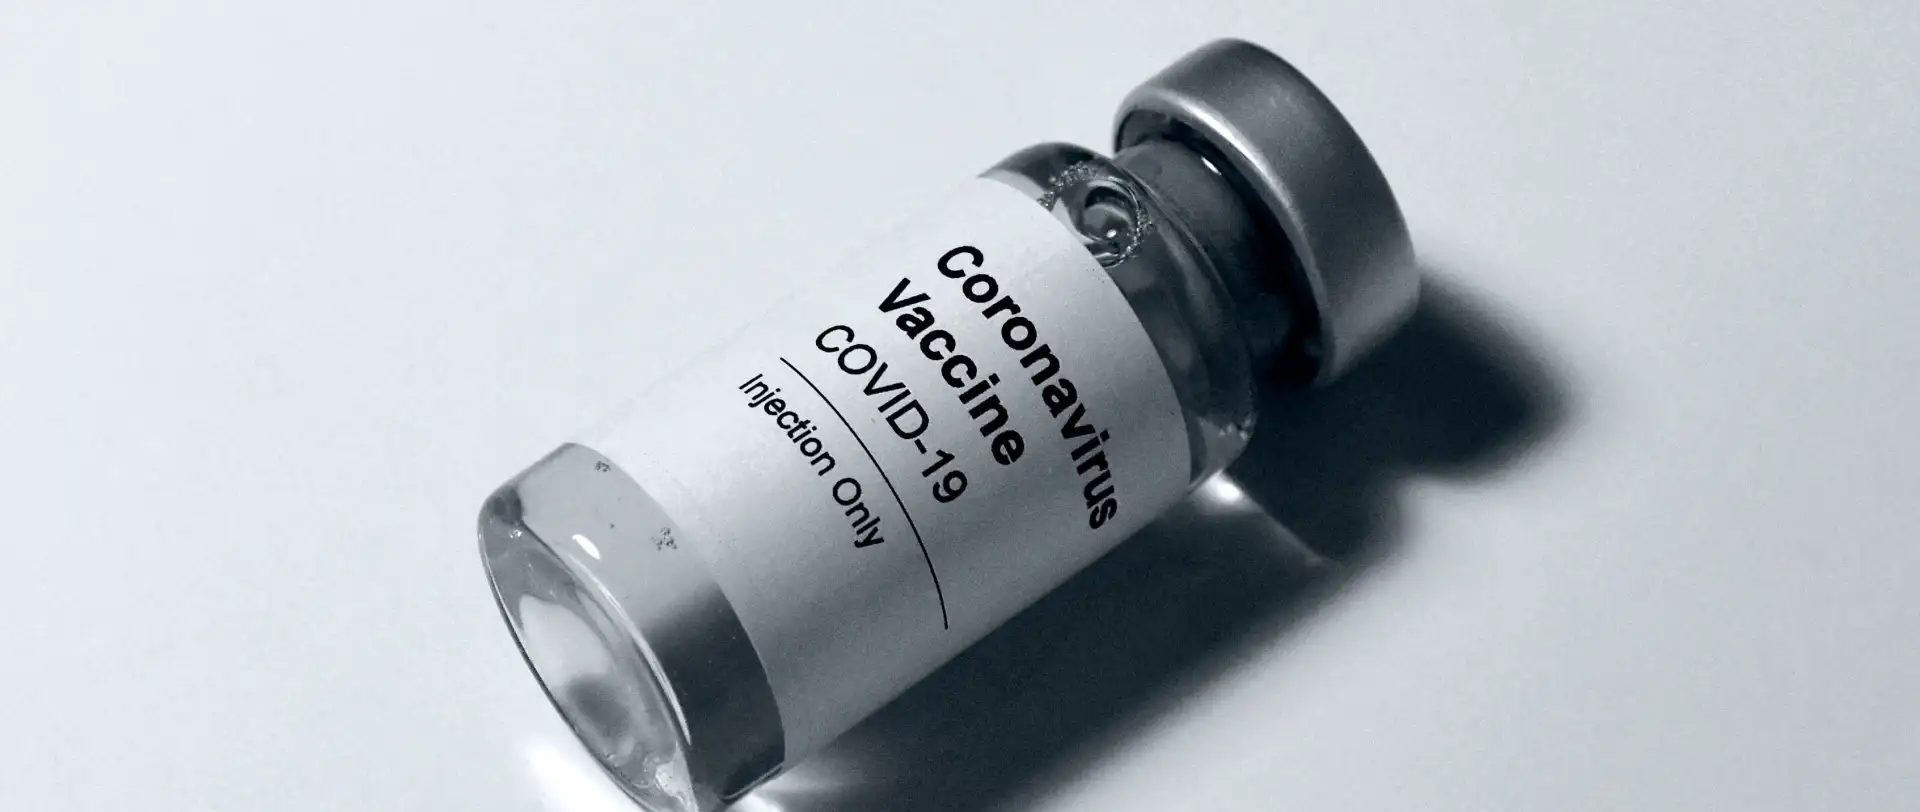 Corona-Impfung und Datenschutz: Was passiert mit unseren Daten?